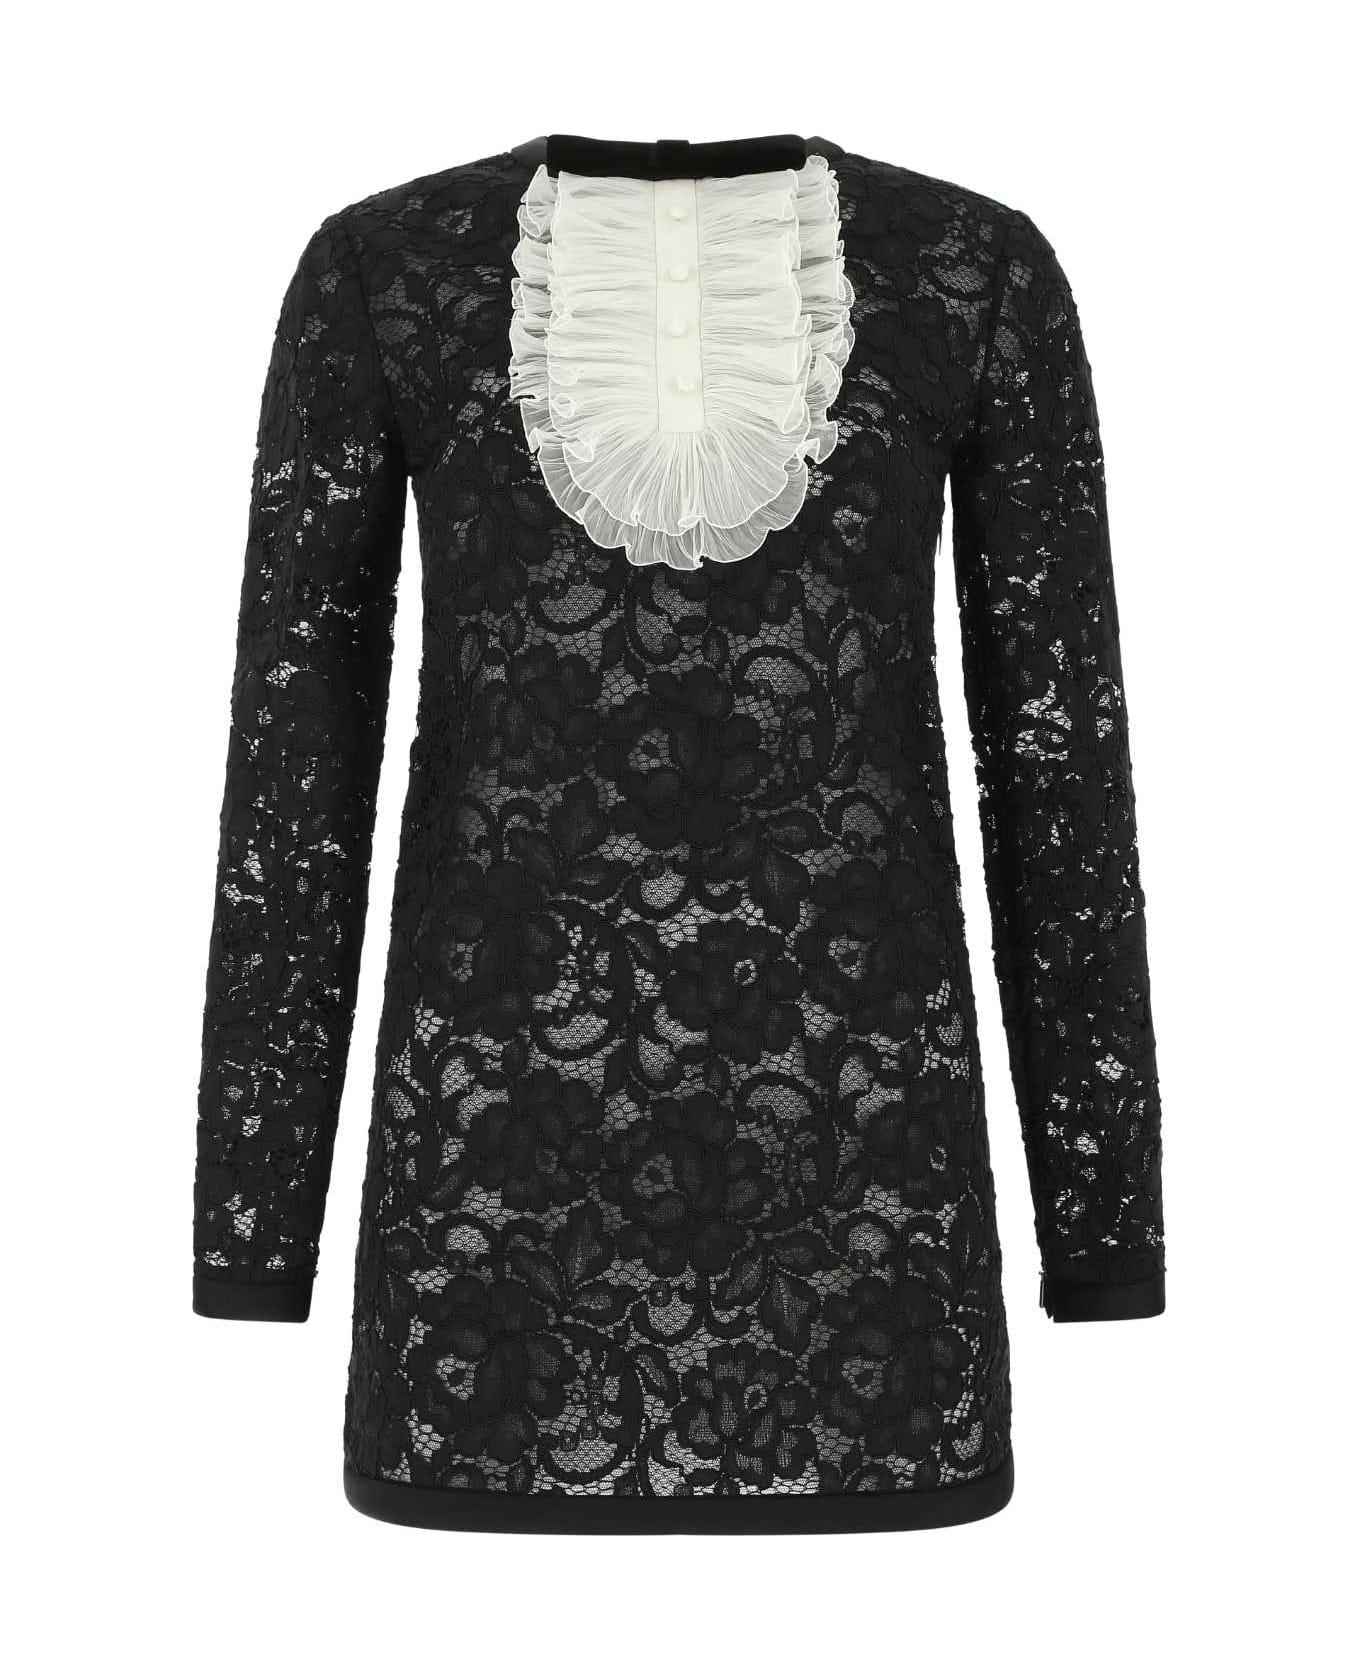 Saint Laurent Black Lace Mini Dress - 1000